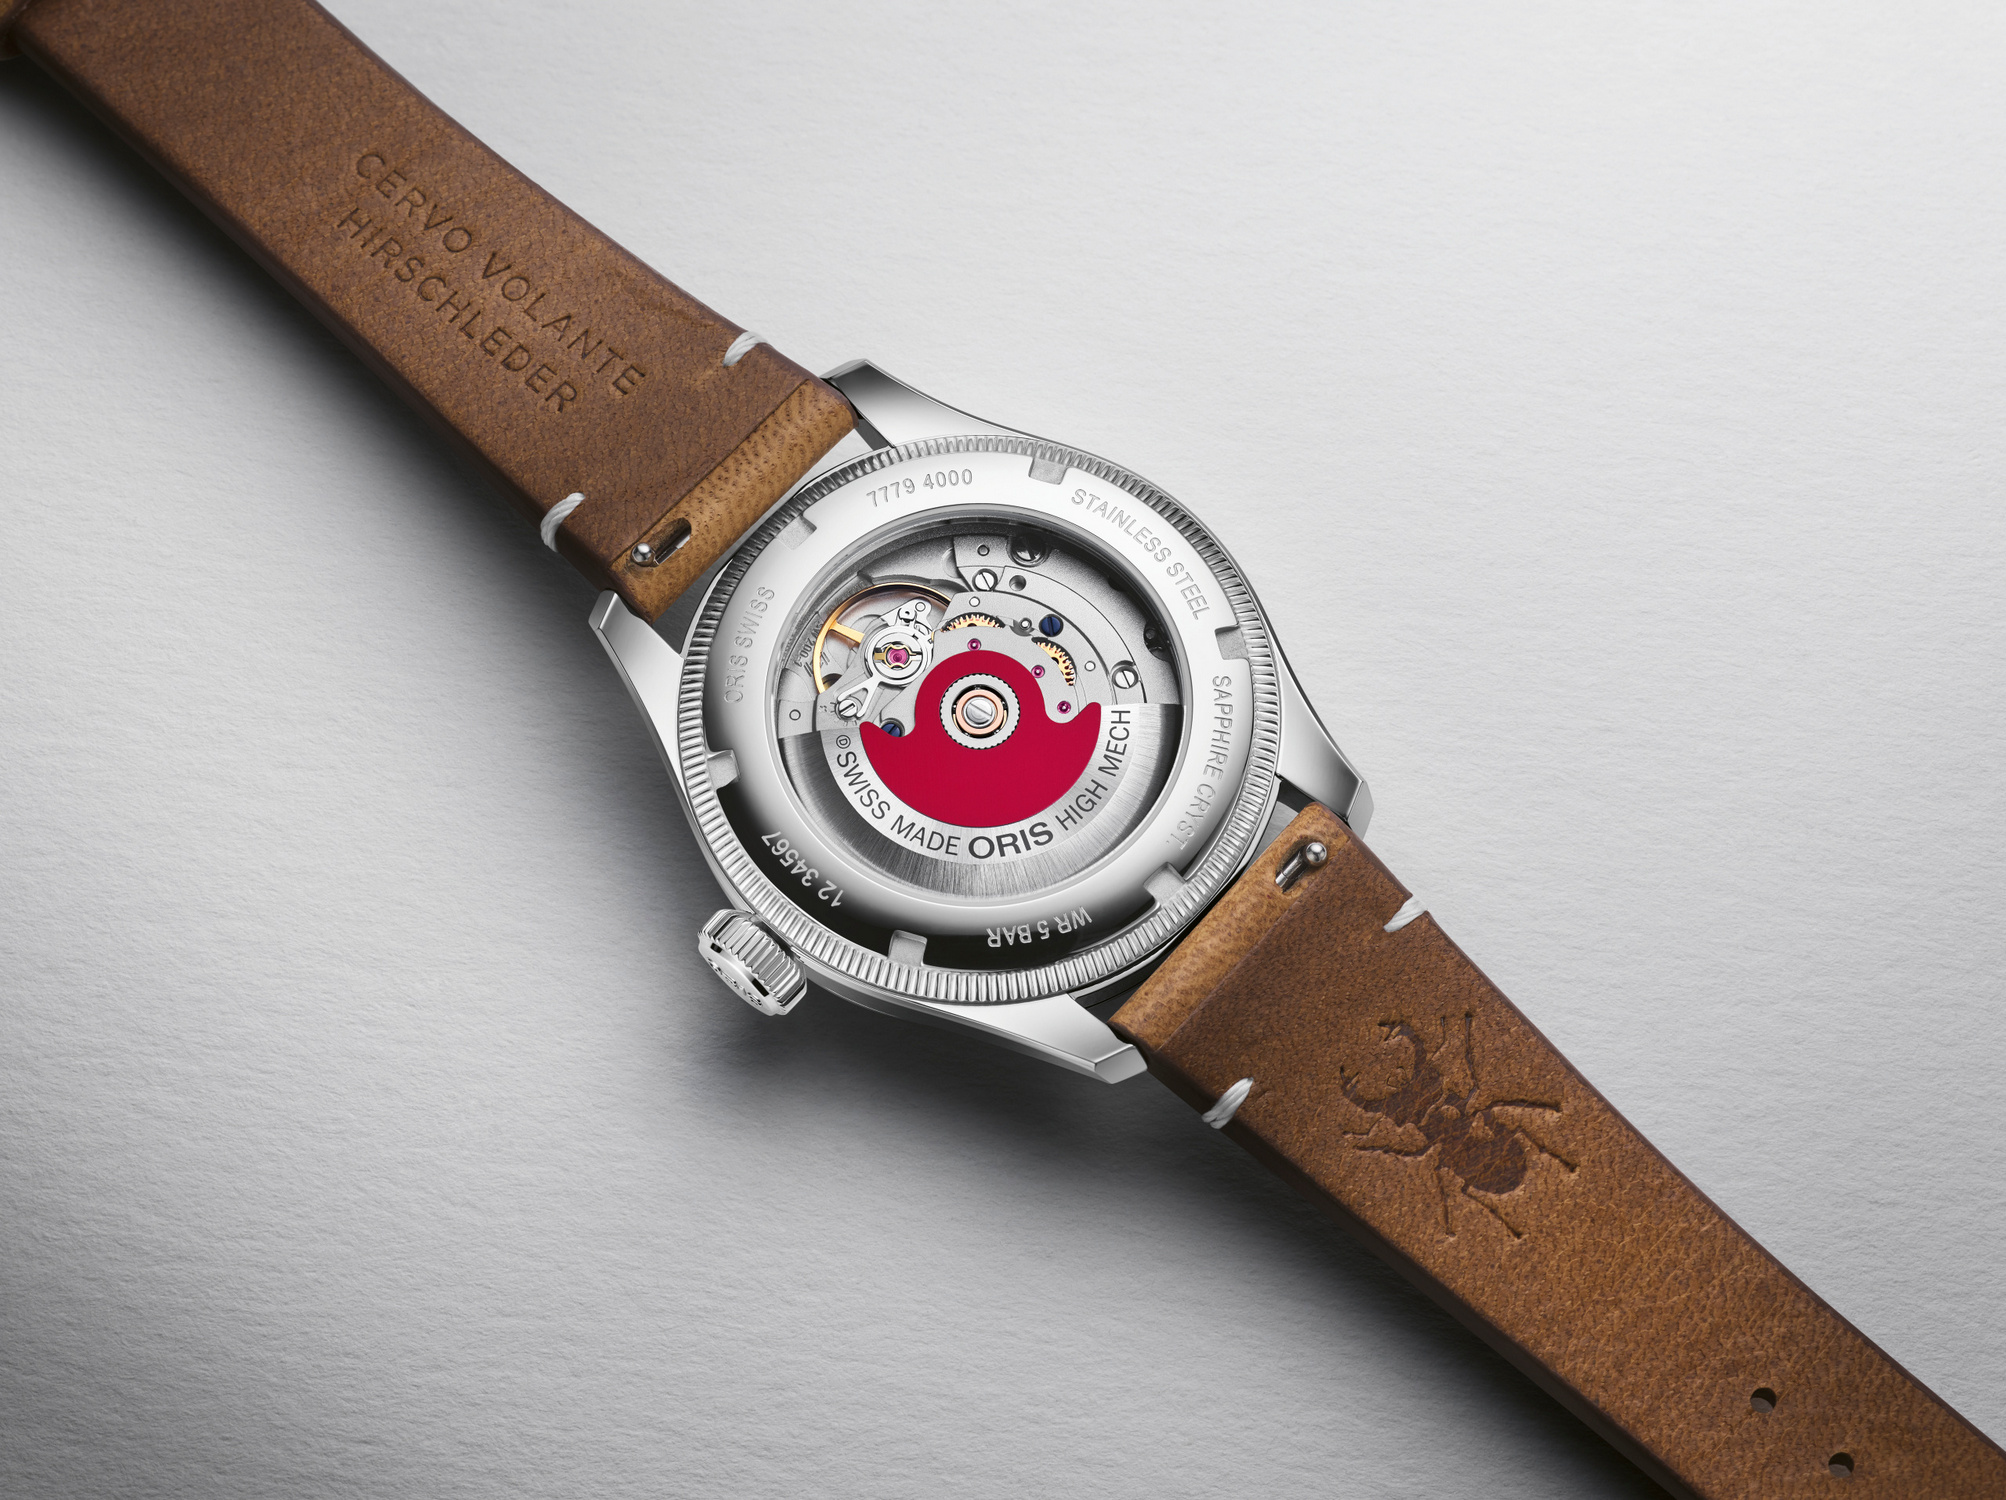 ORIS BIG CROWN Женские швейцарские часы, автоматический механизм, сталь, 38 мм